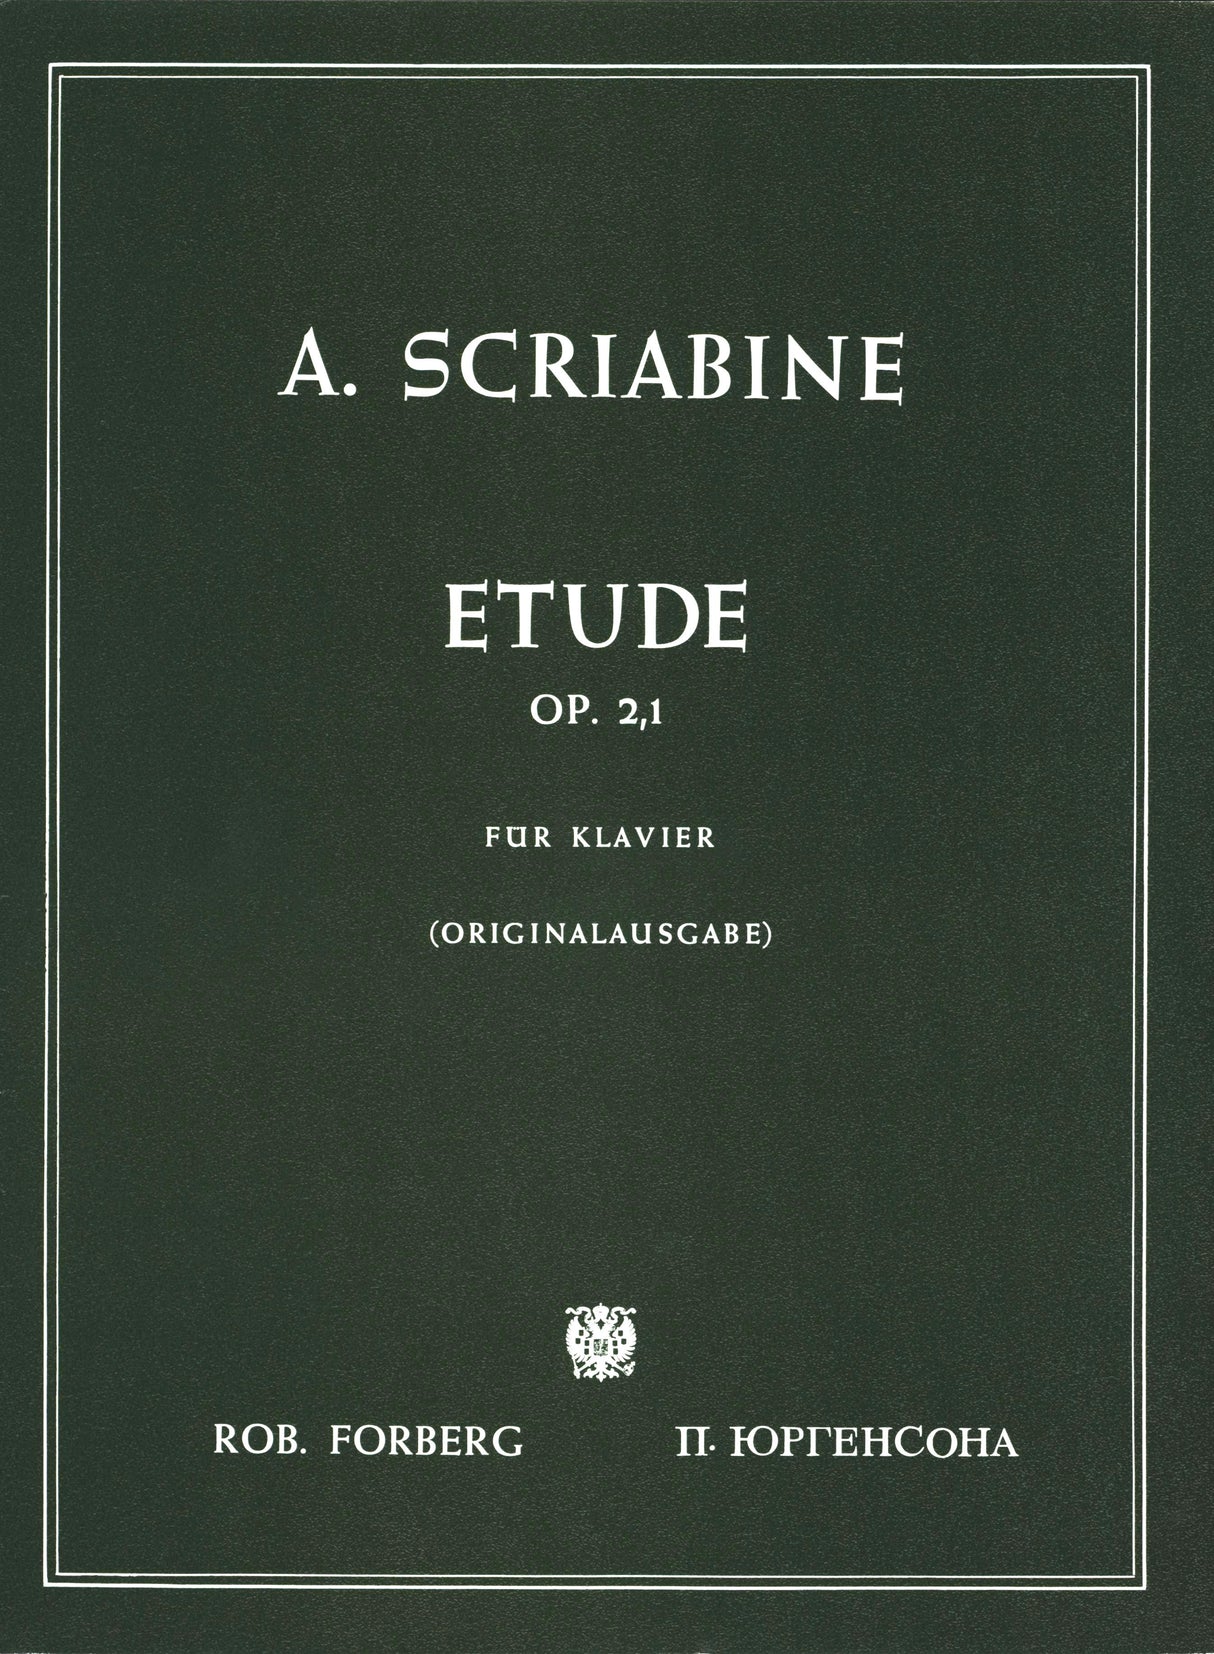 Scriabin: Étude in C-sharp Minor, Op. 2, No. 1